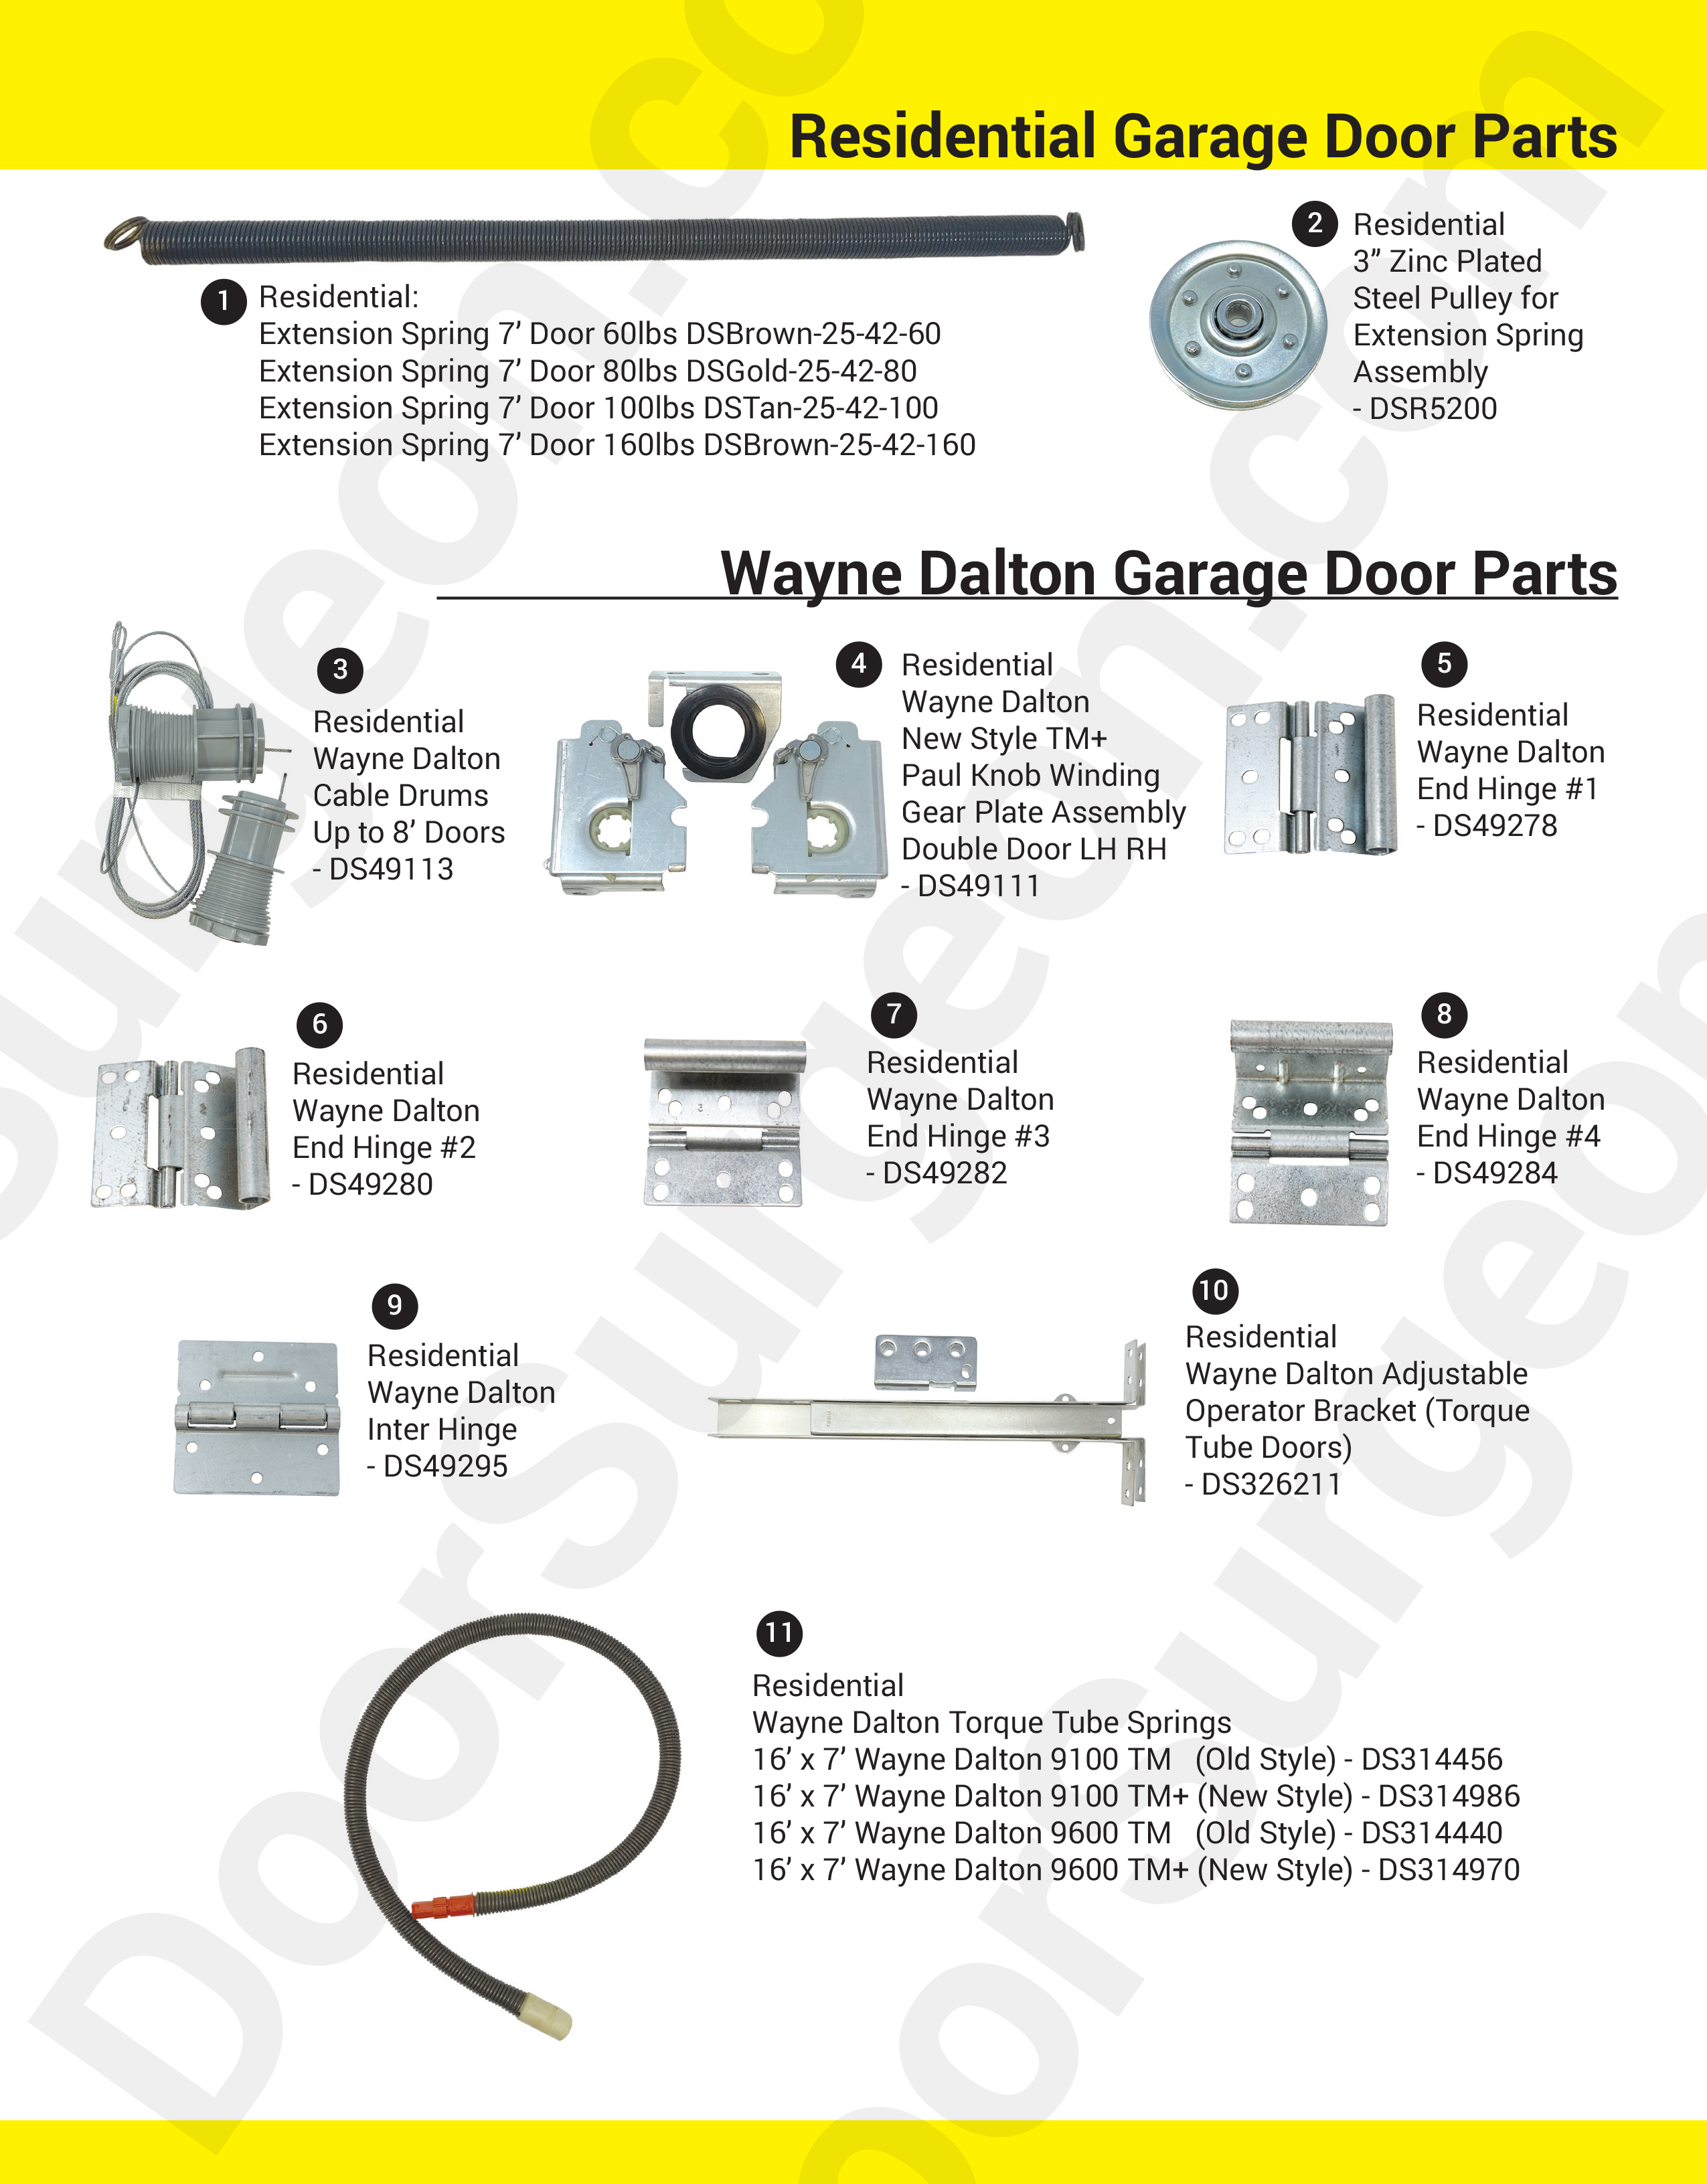 Door Surgeon replacement parts for residential garage doors.